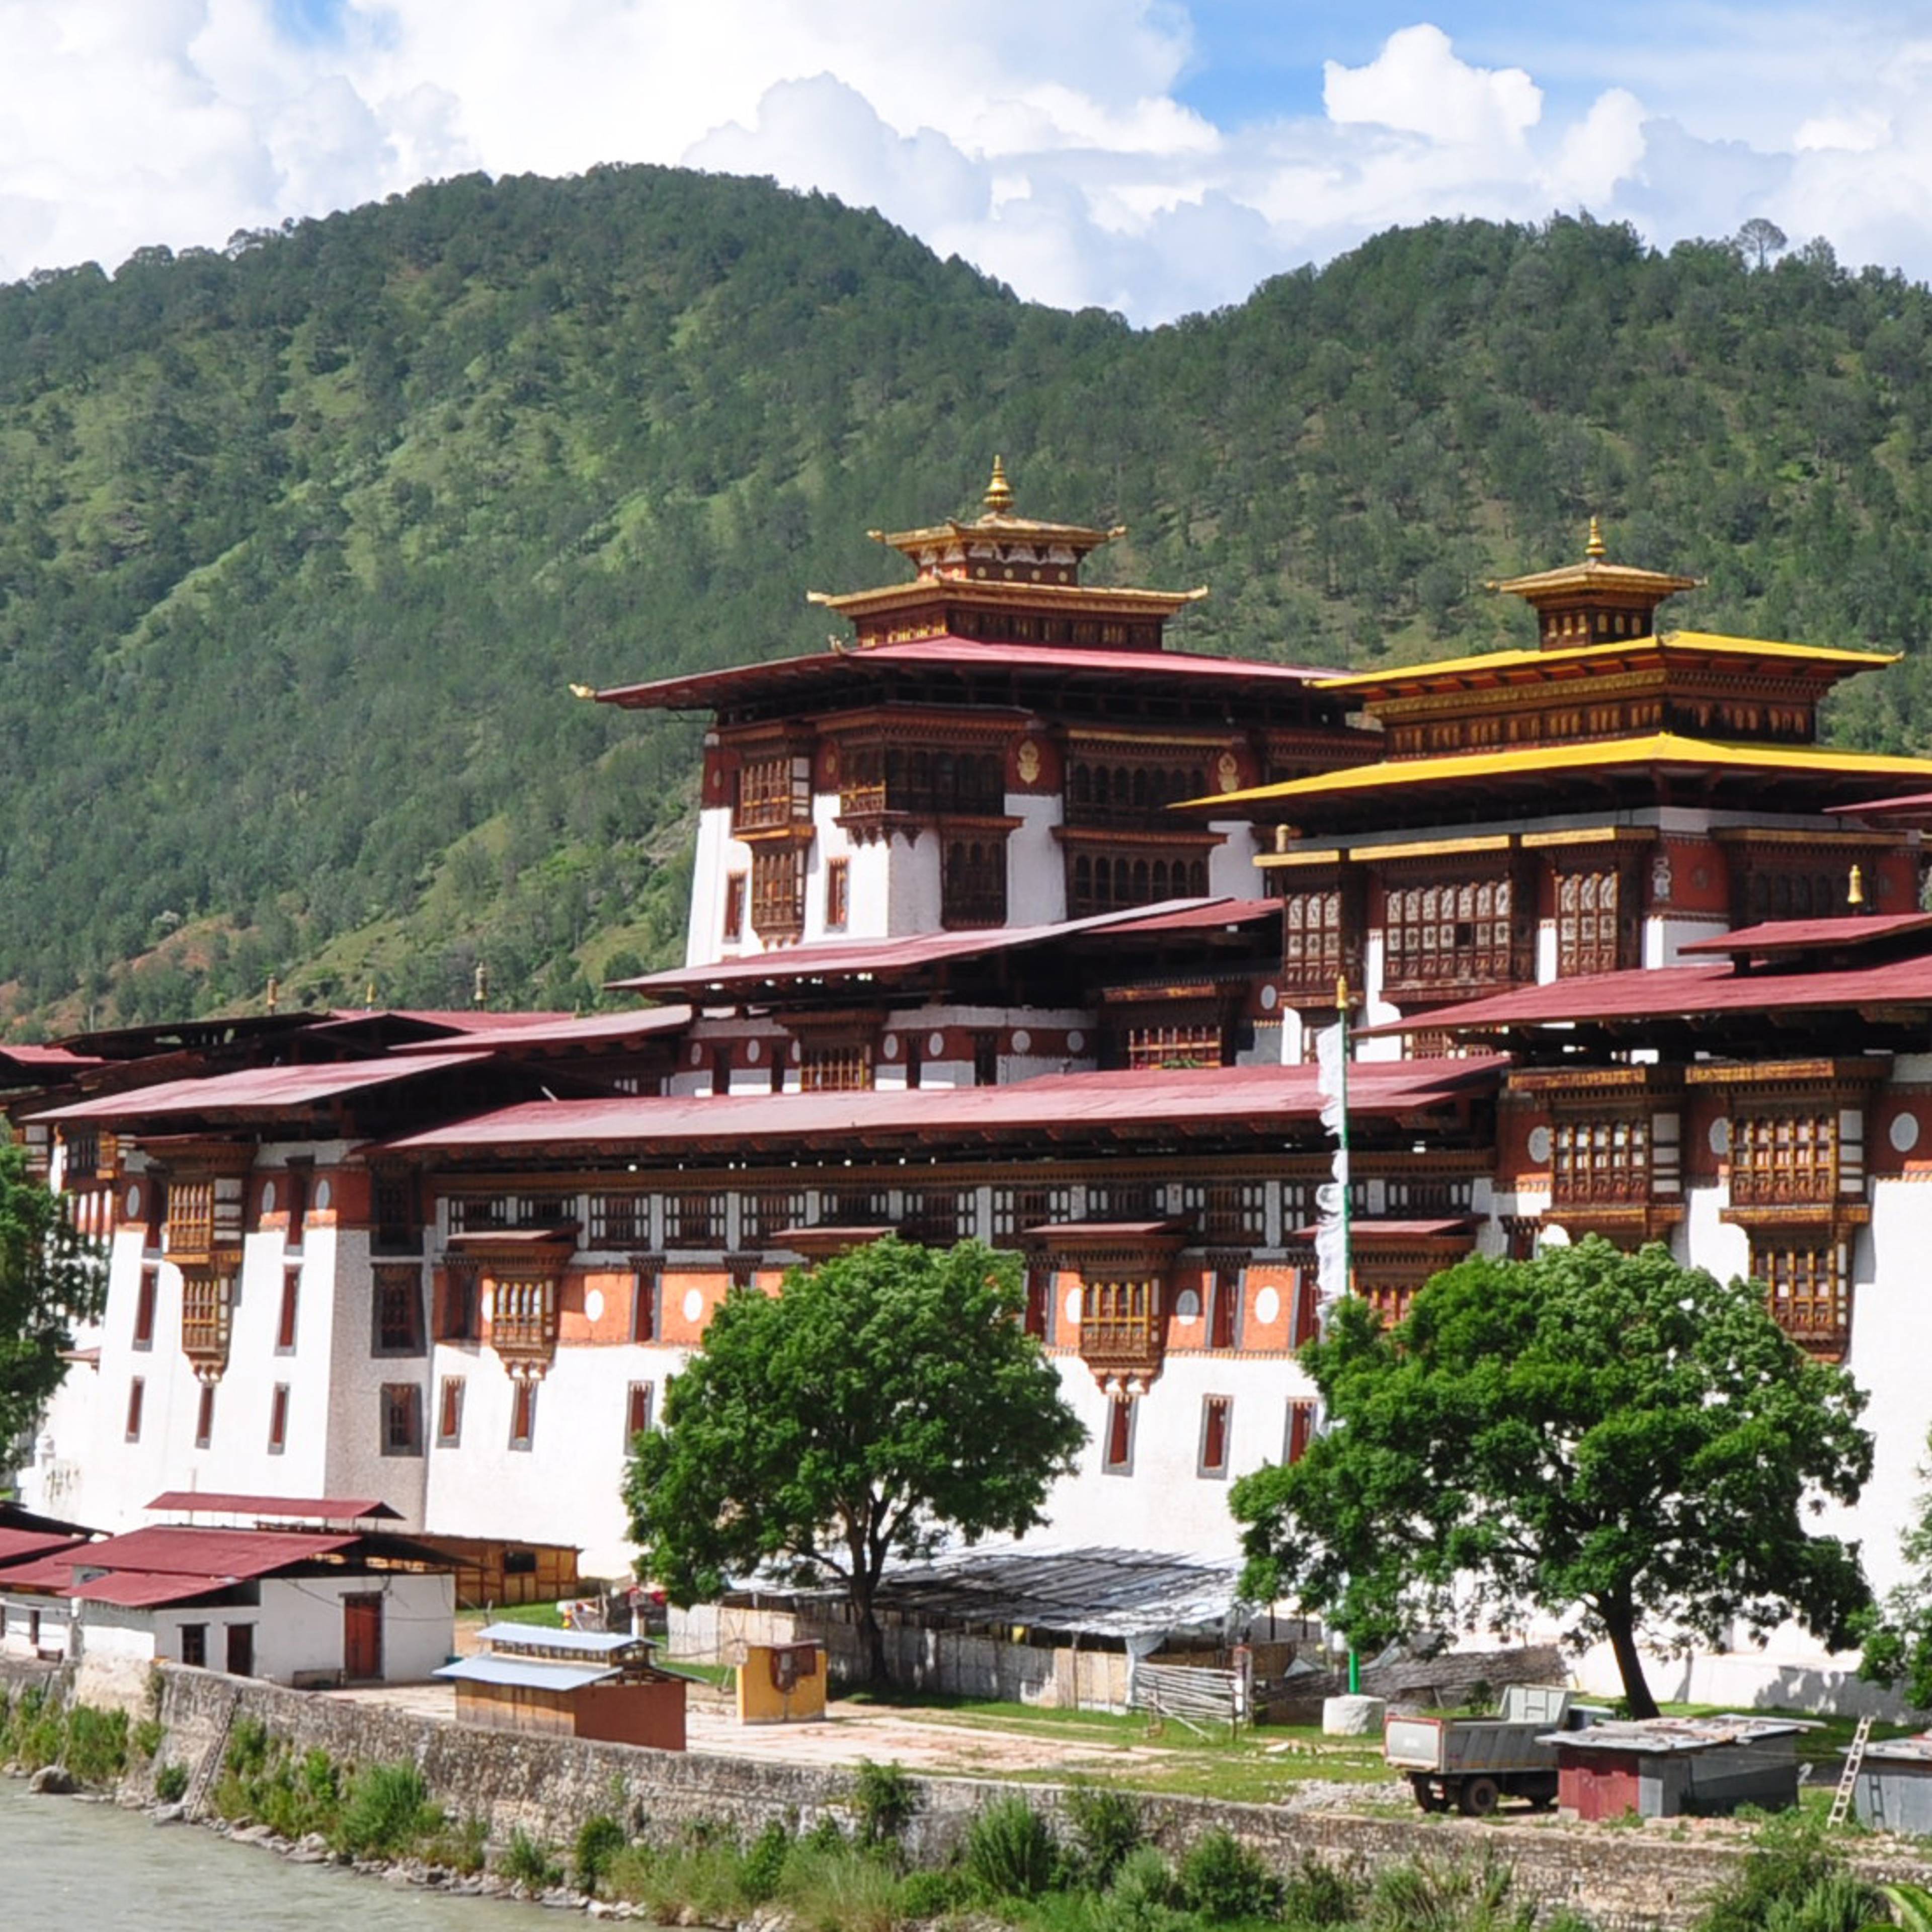 Crea il tuo viaggio in Bhutan in inverno, 100% su misura